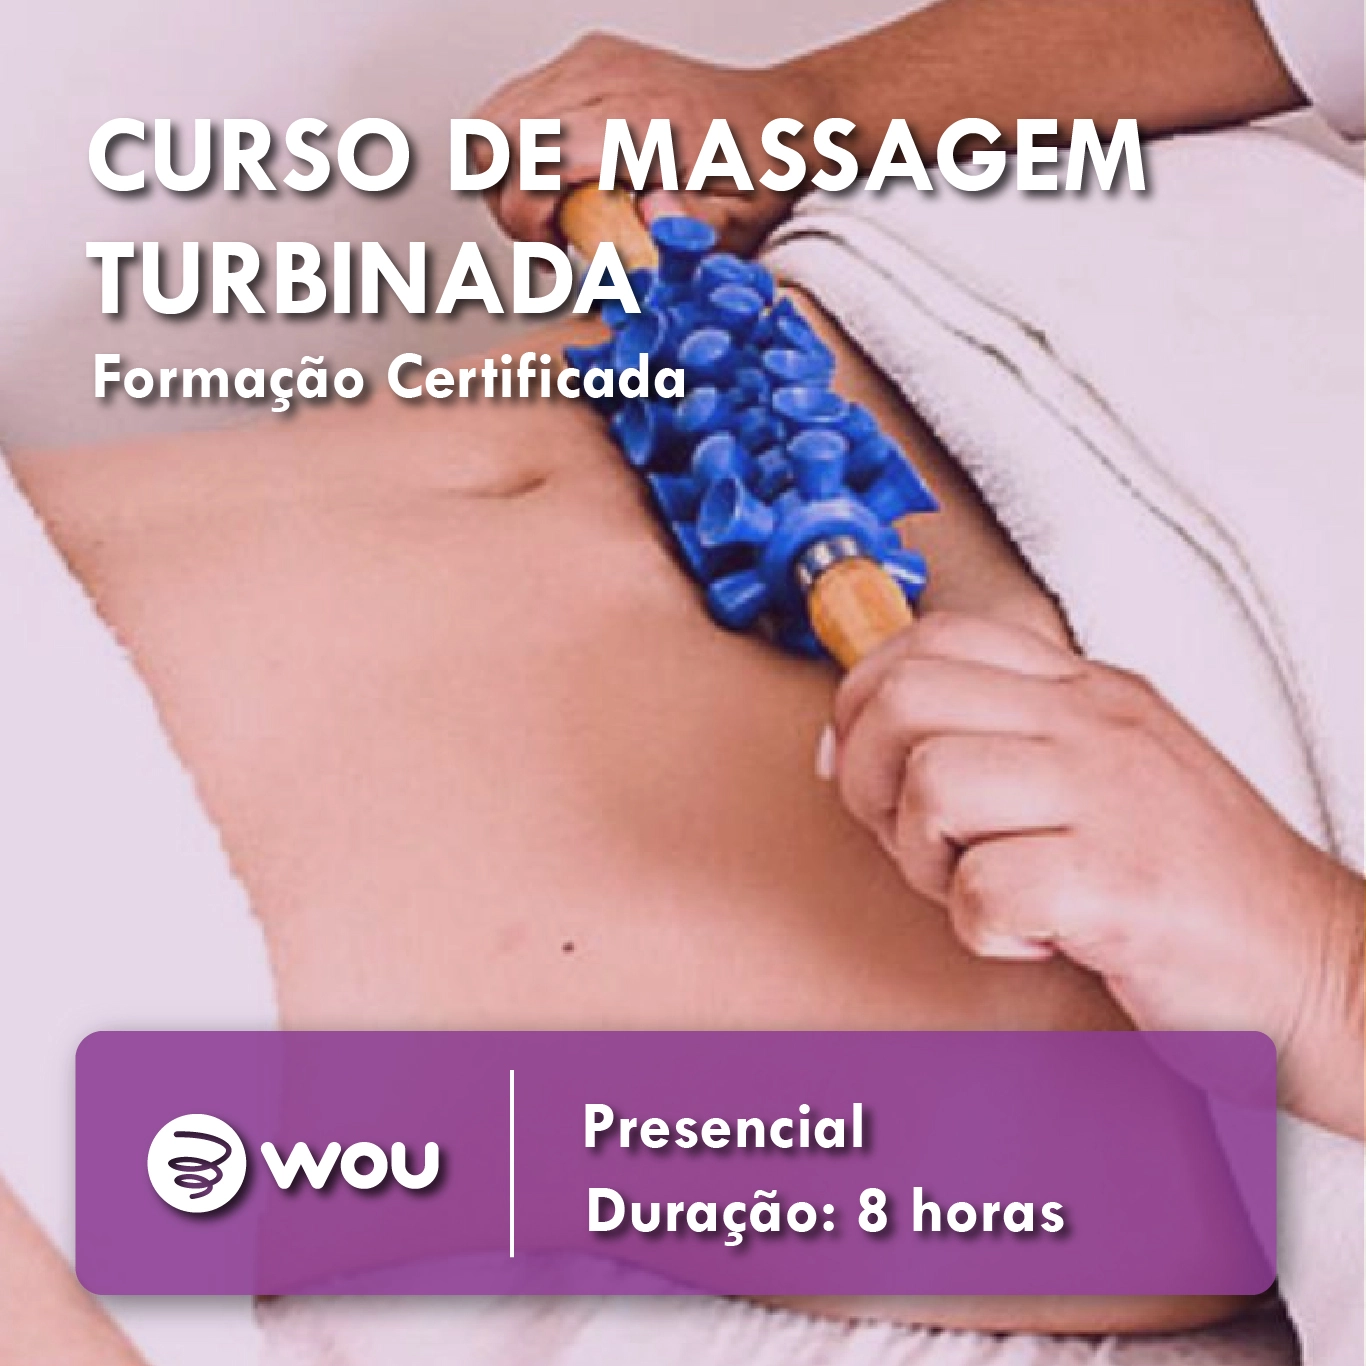 Curso de Massagem Turbinada em Aveiro